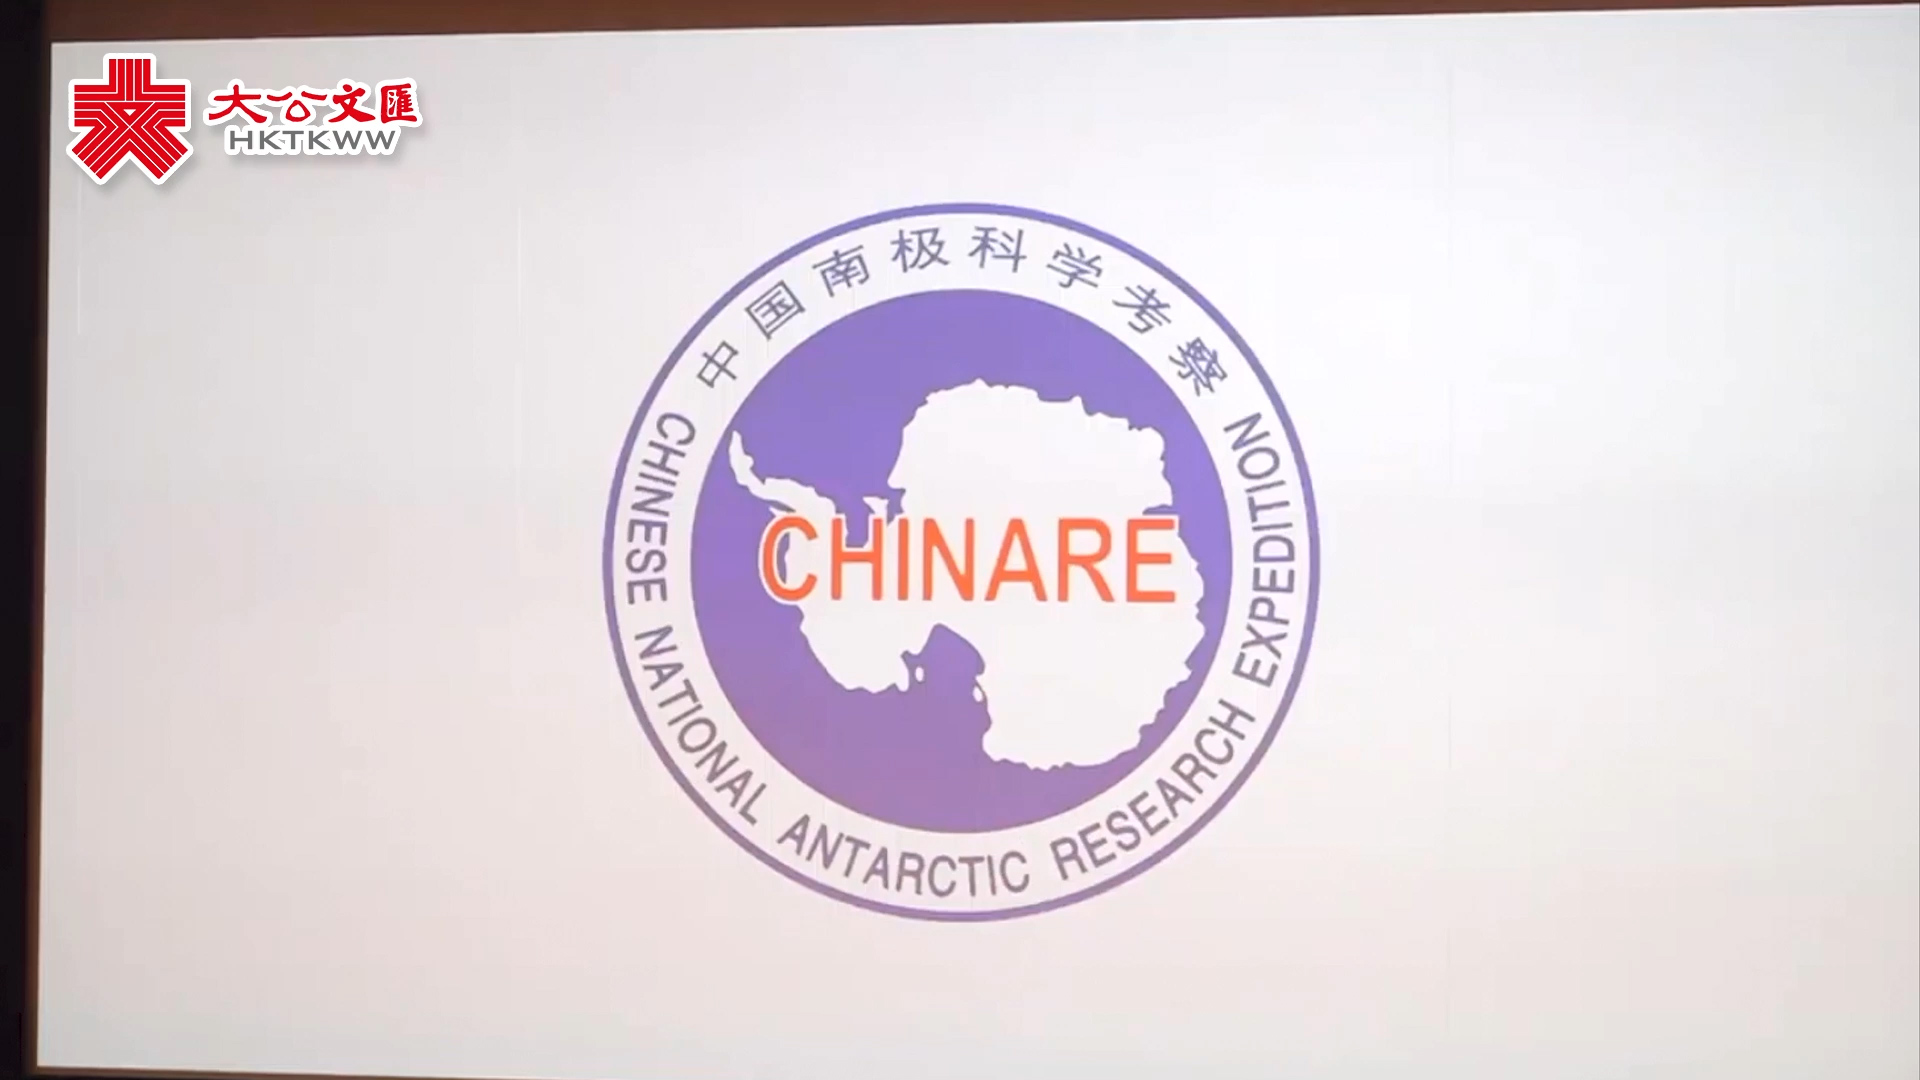 一条视频告诉你 中国近40载的南极考察之路